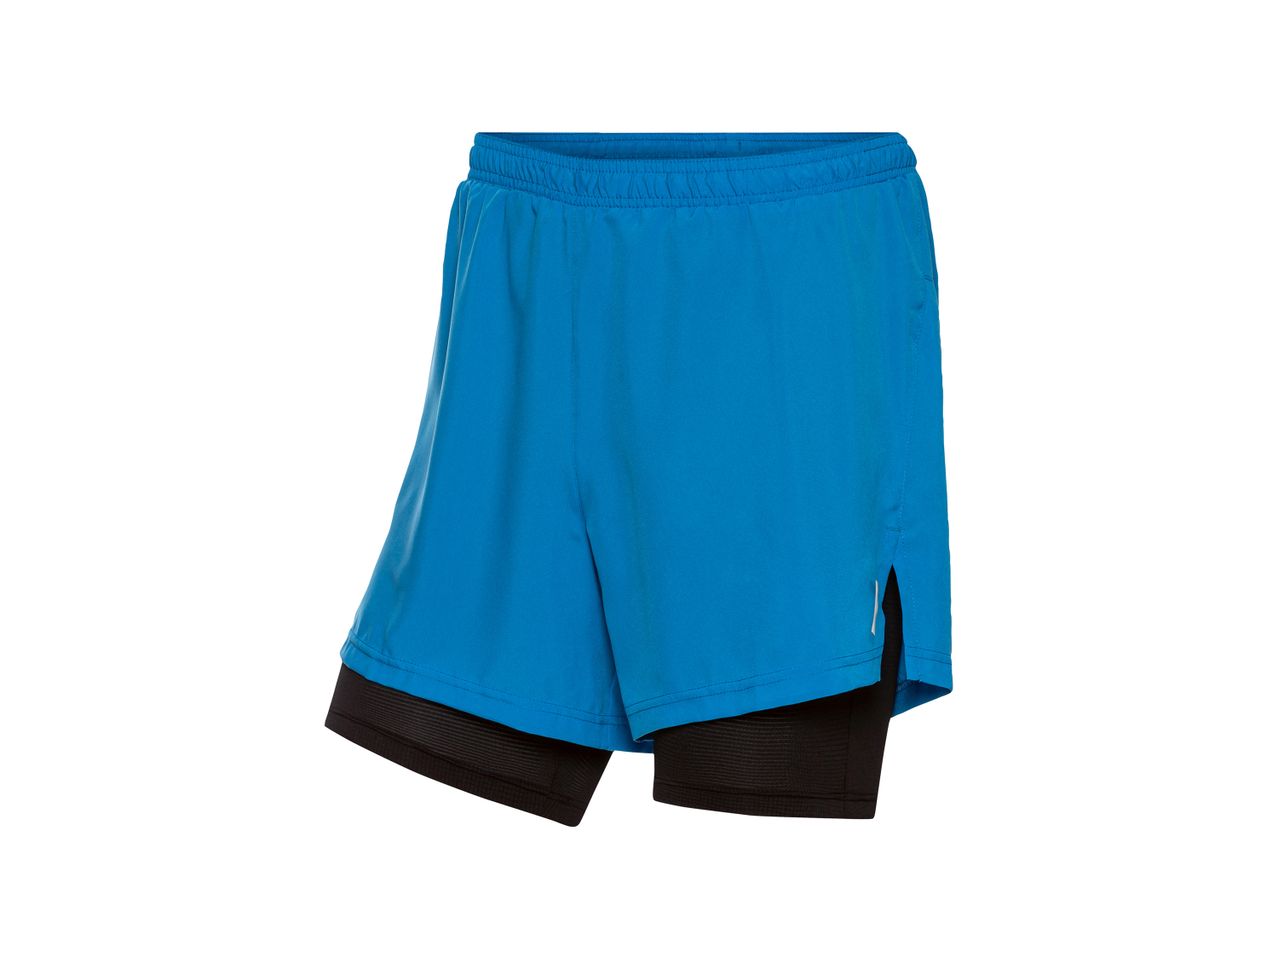 Shorts sportivi da uomo , prezzo 5.99 EUR 
Shorts sportivi da uomo Misure: M-XL ...